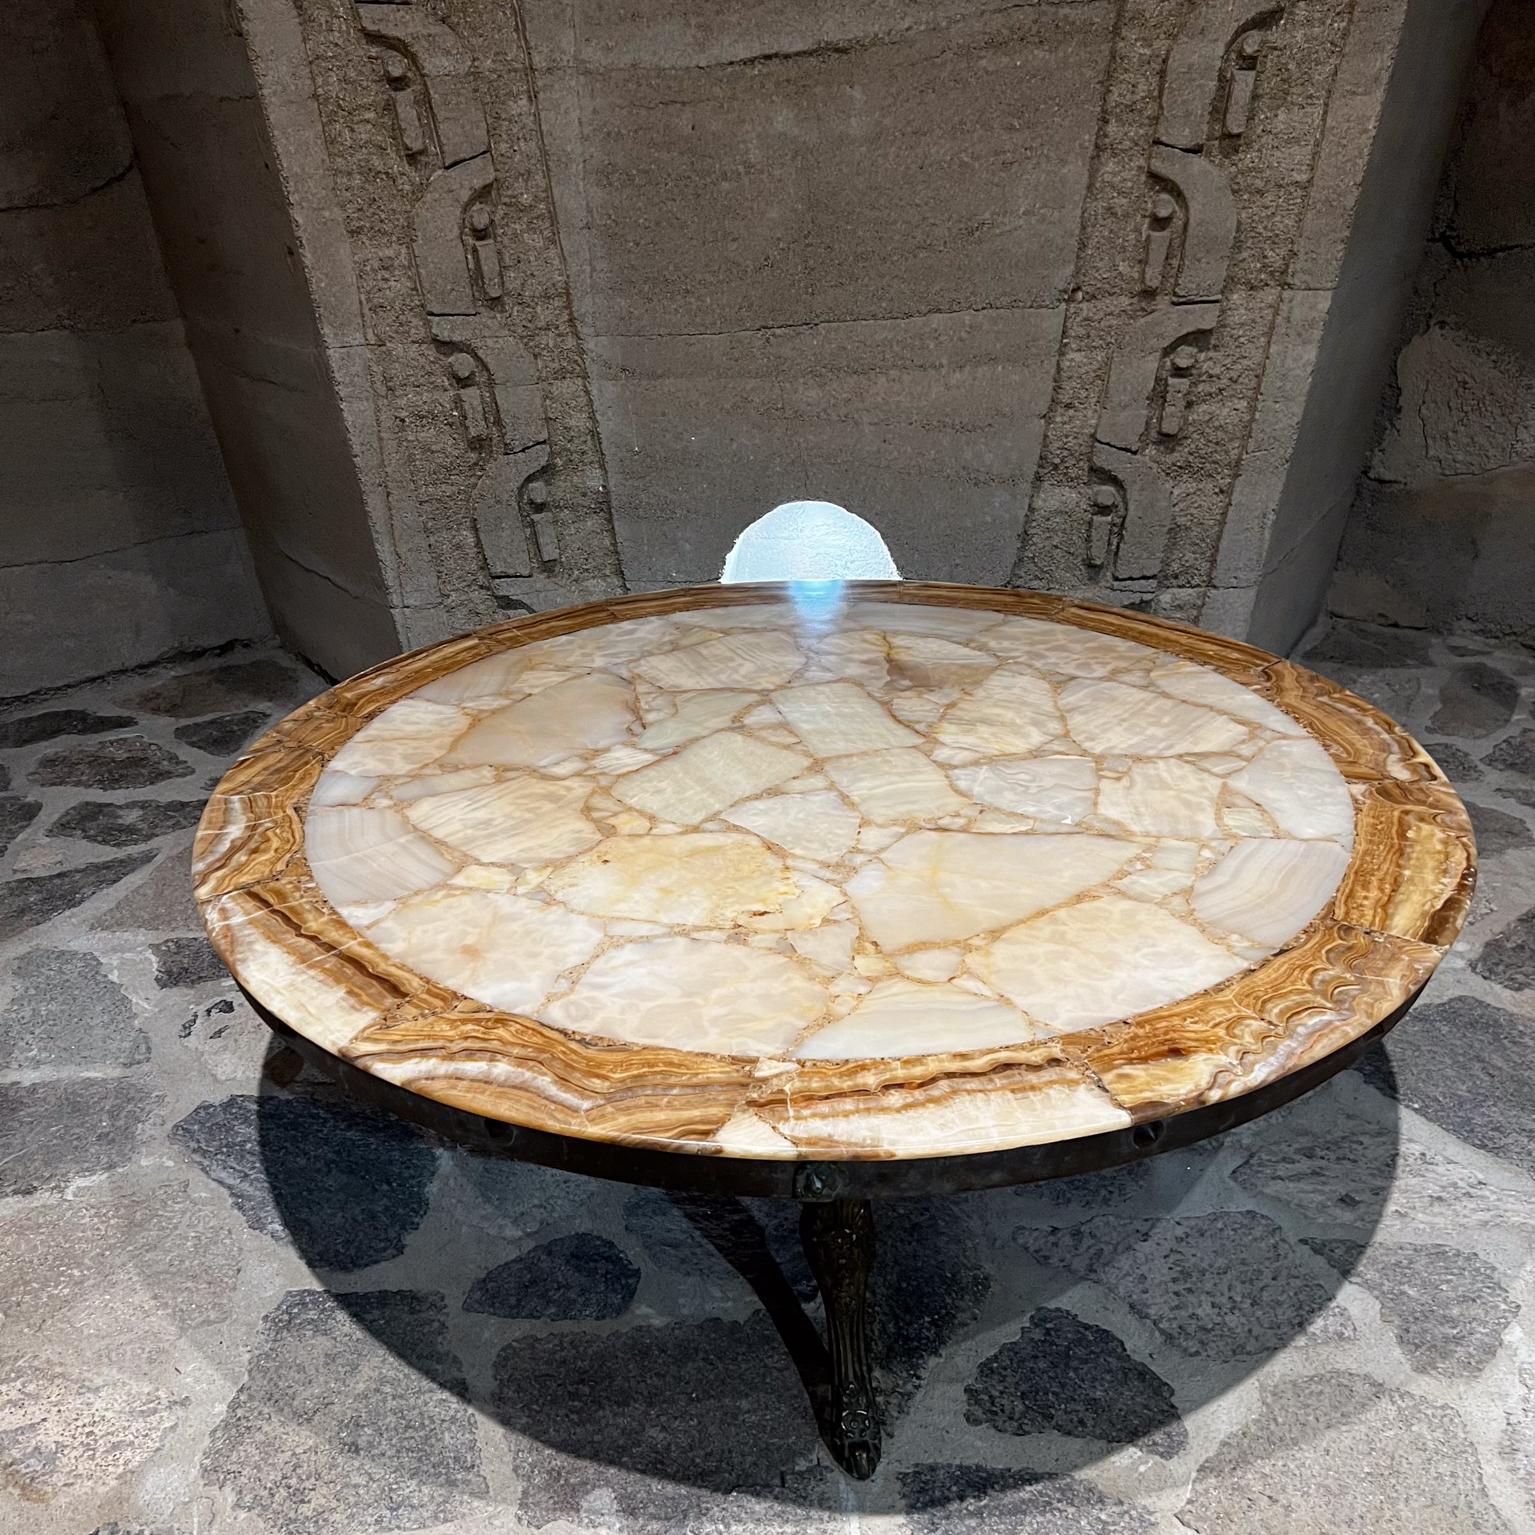 AMBIANIC präsentiert
1960er Muller of Mexico Glamorous Modern Round Onyx Stone Coffee Table Sculptural Cabriole Legs
Originaler, gebrauchter Vintage-Zustand. Die Tischplatte wurde restauriert, neu satiniert.
Neue Beine aus Bronze.
47,25 Durchmesser